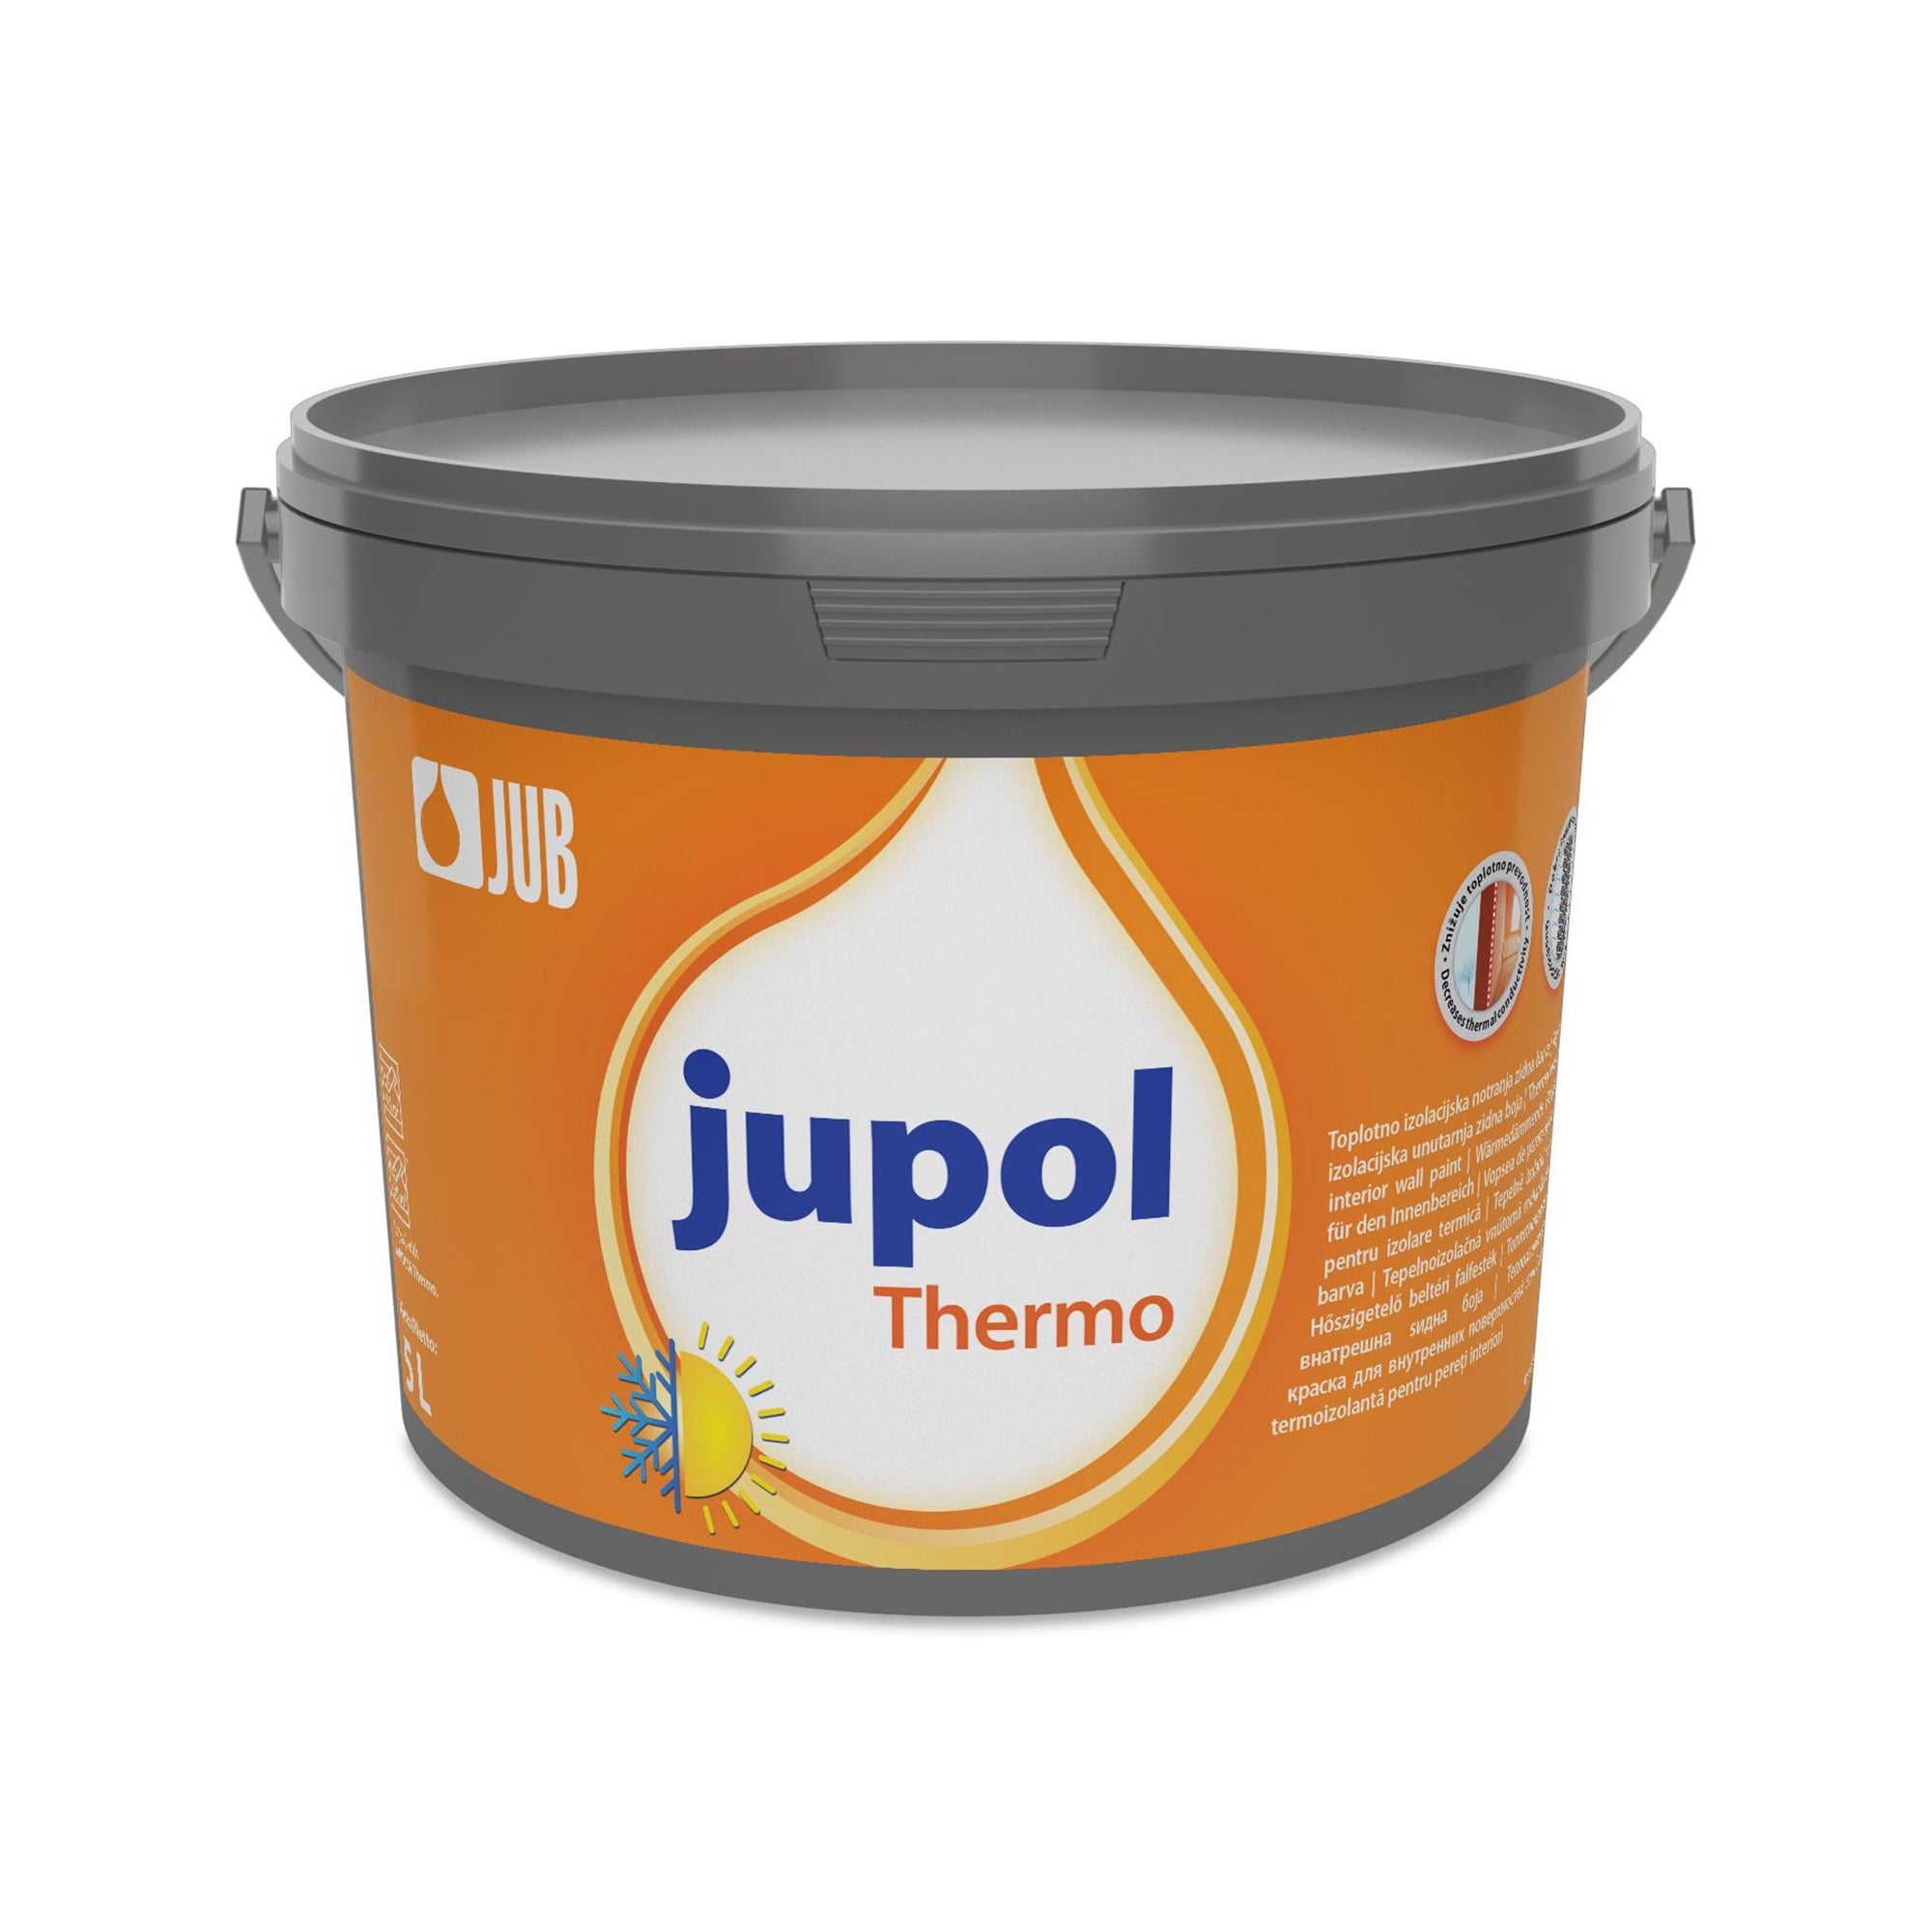 JUB JUPOL Thermo biela tepelnoizolačná vnútorná maliarska farba 5 l